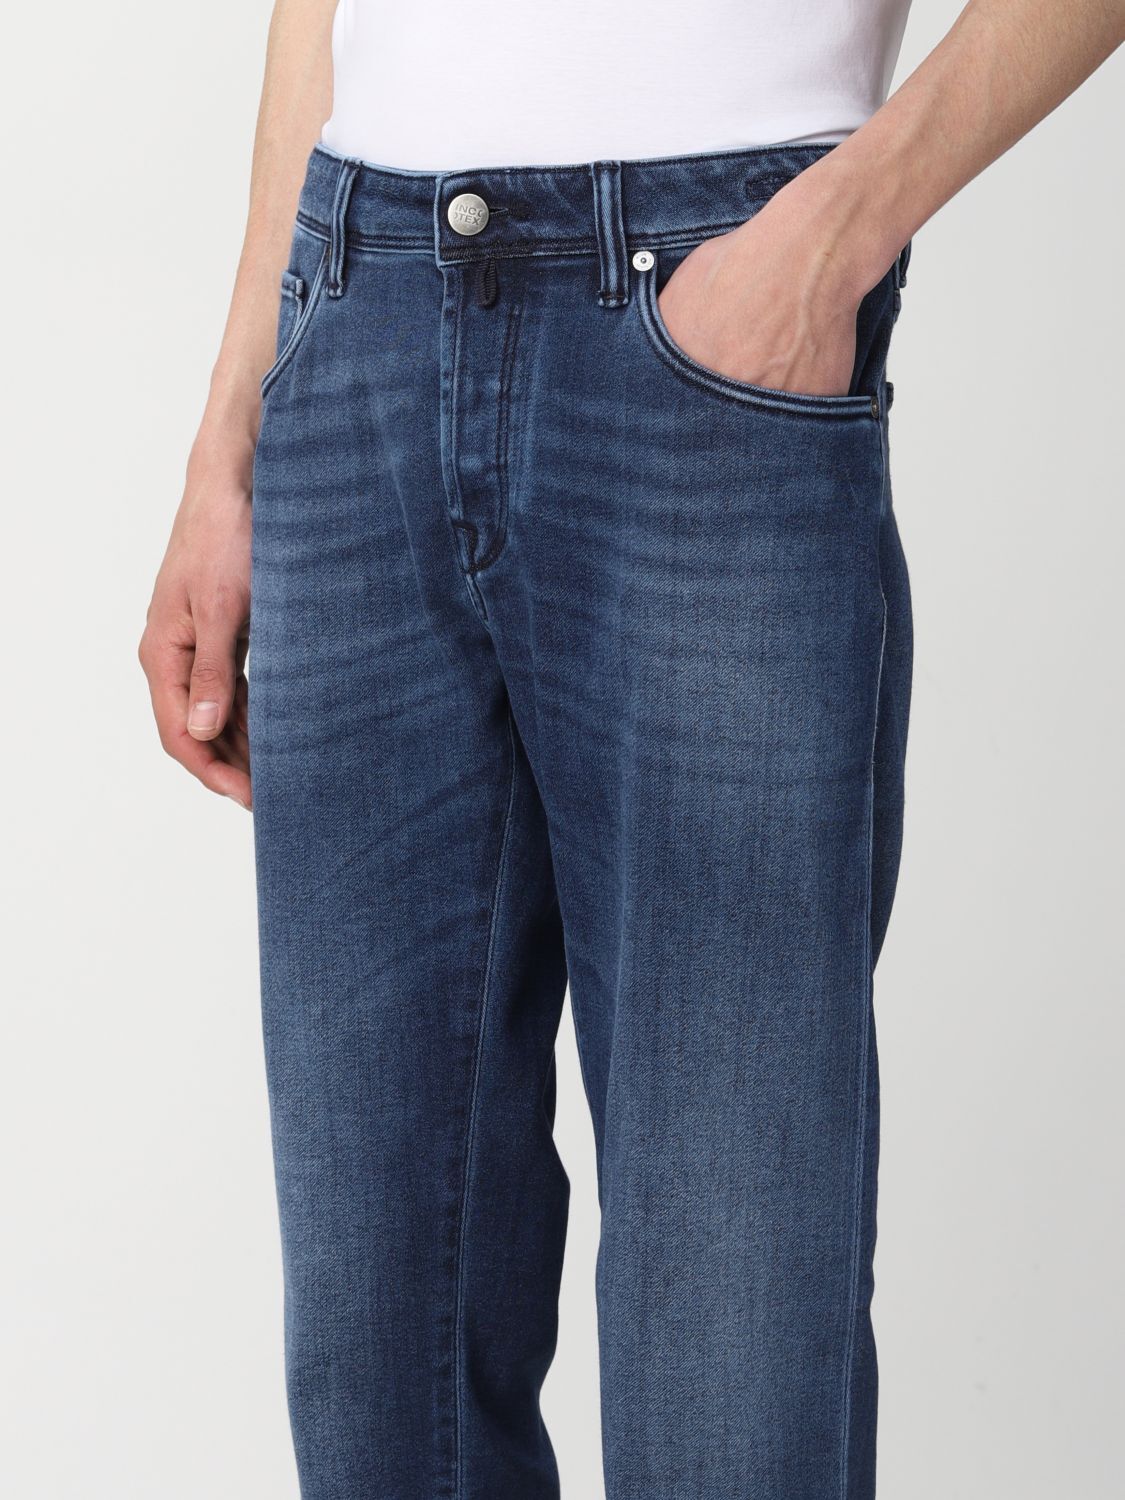 Beperken Groot opwinding Incotex Jeans Blauw